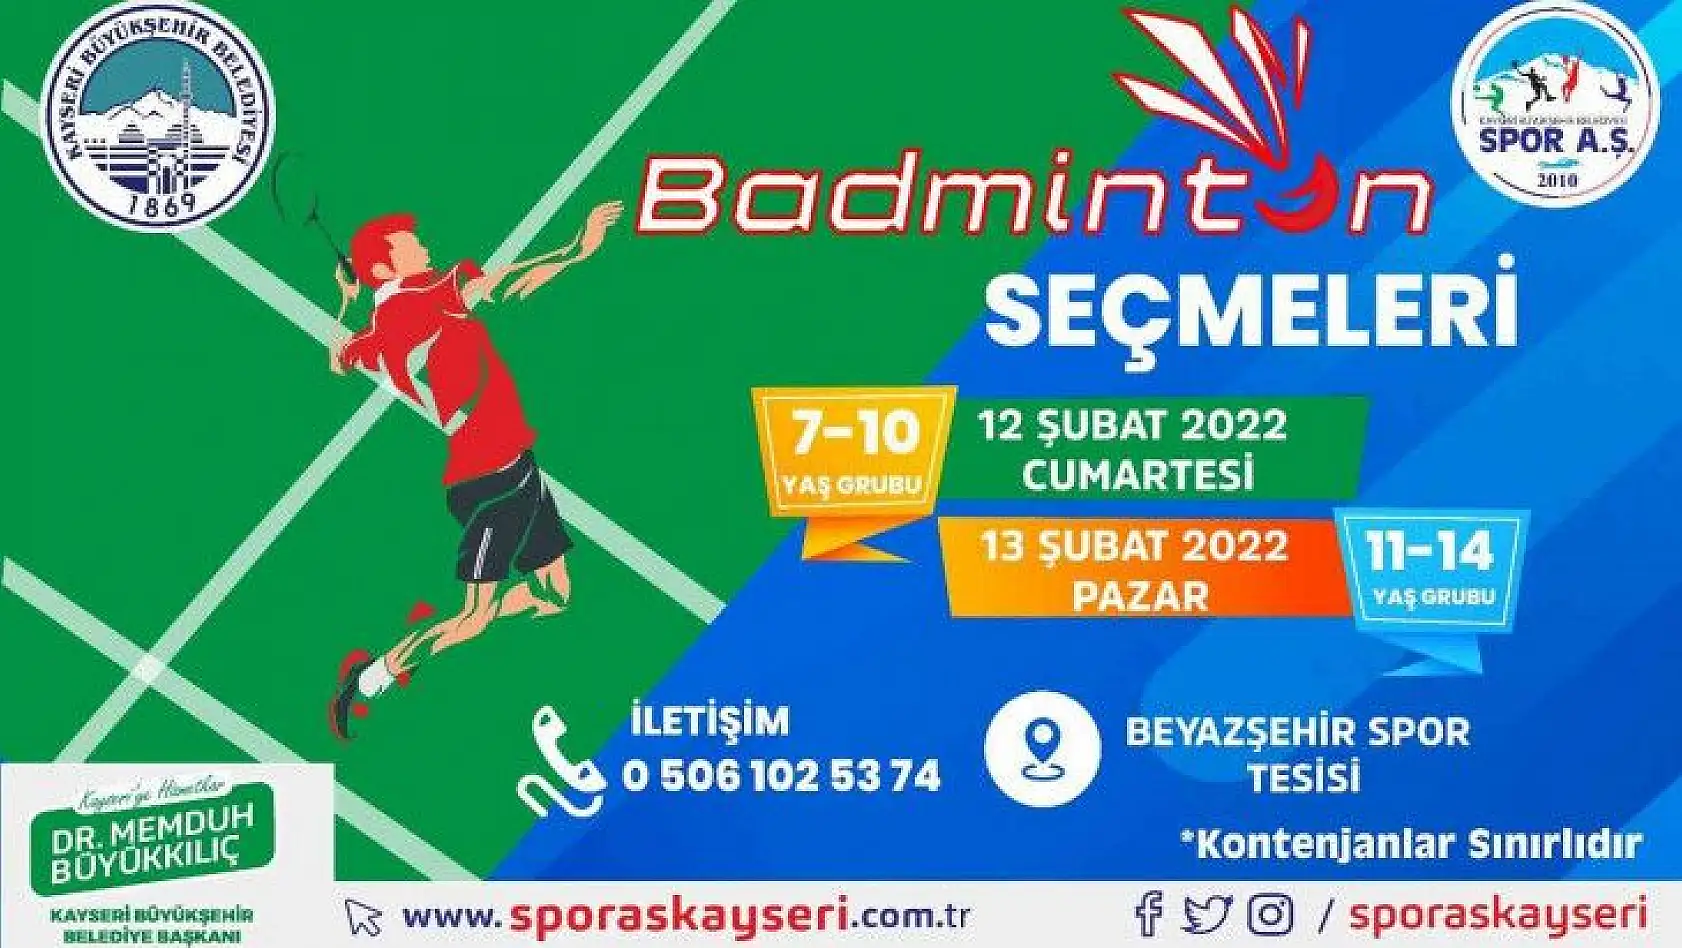 Büyükşehir Spor A.Ş.'de badminton seçmeleri başlıyor